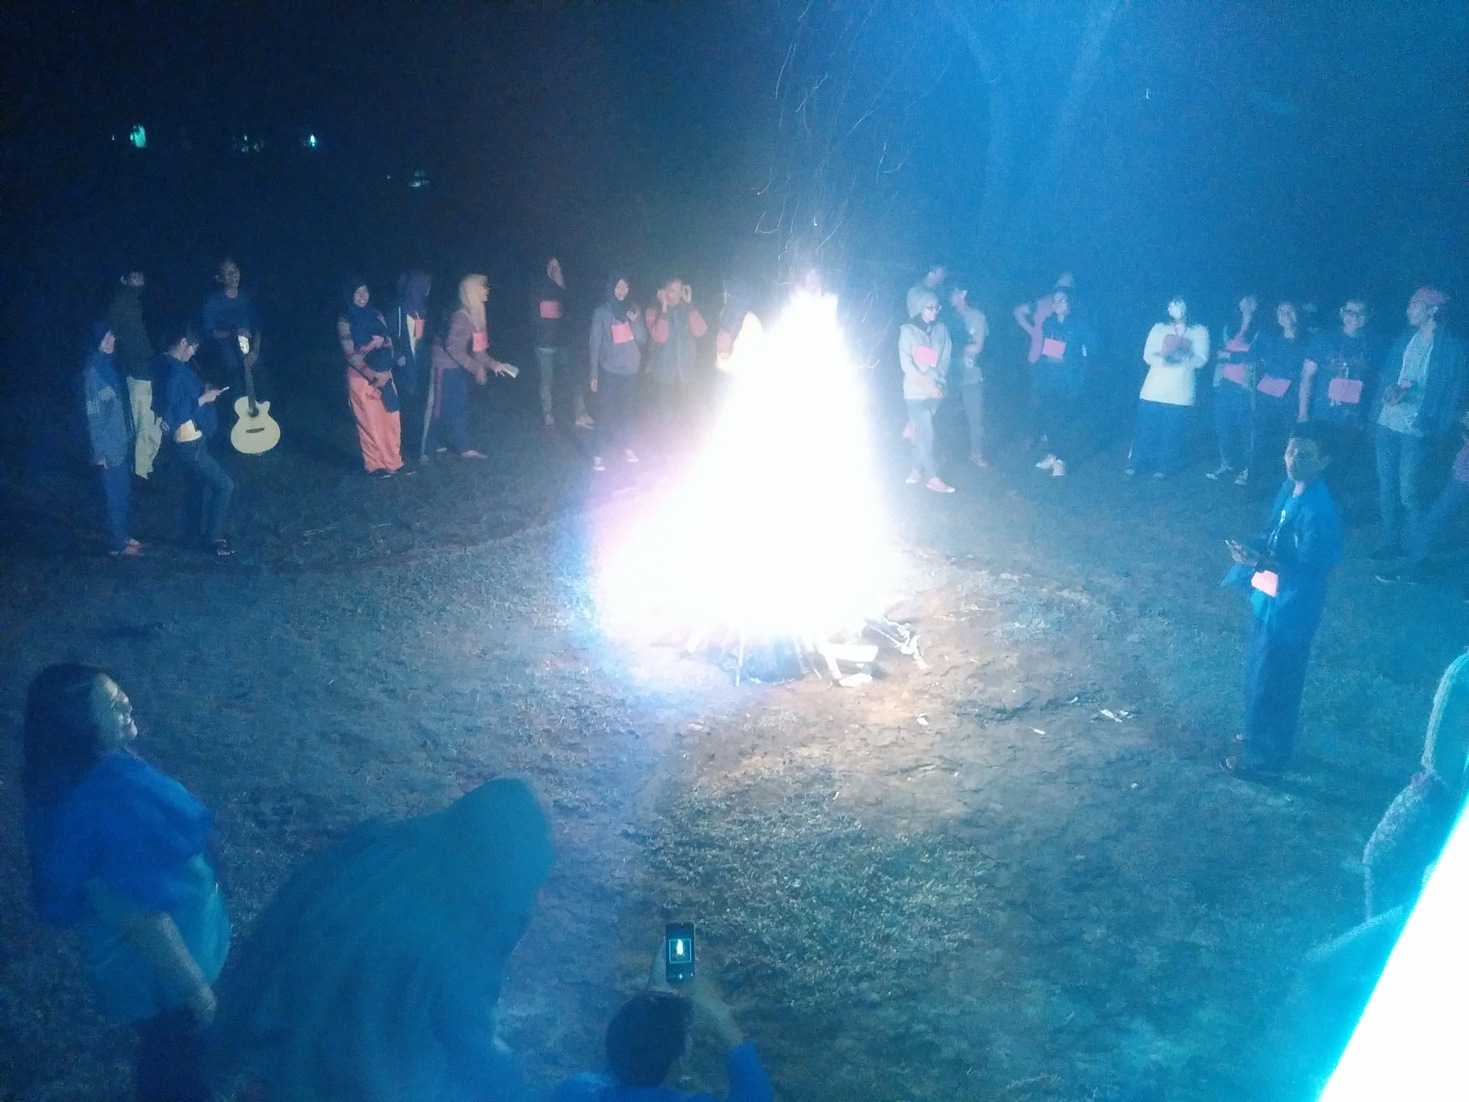 Api unggun dan performance dari peserta